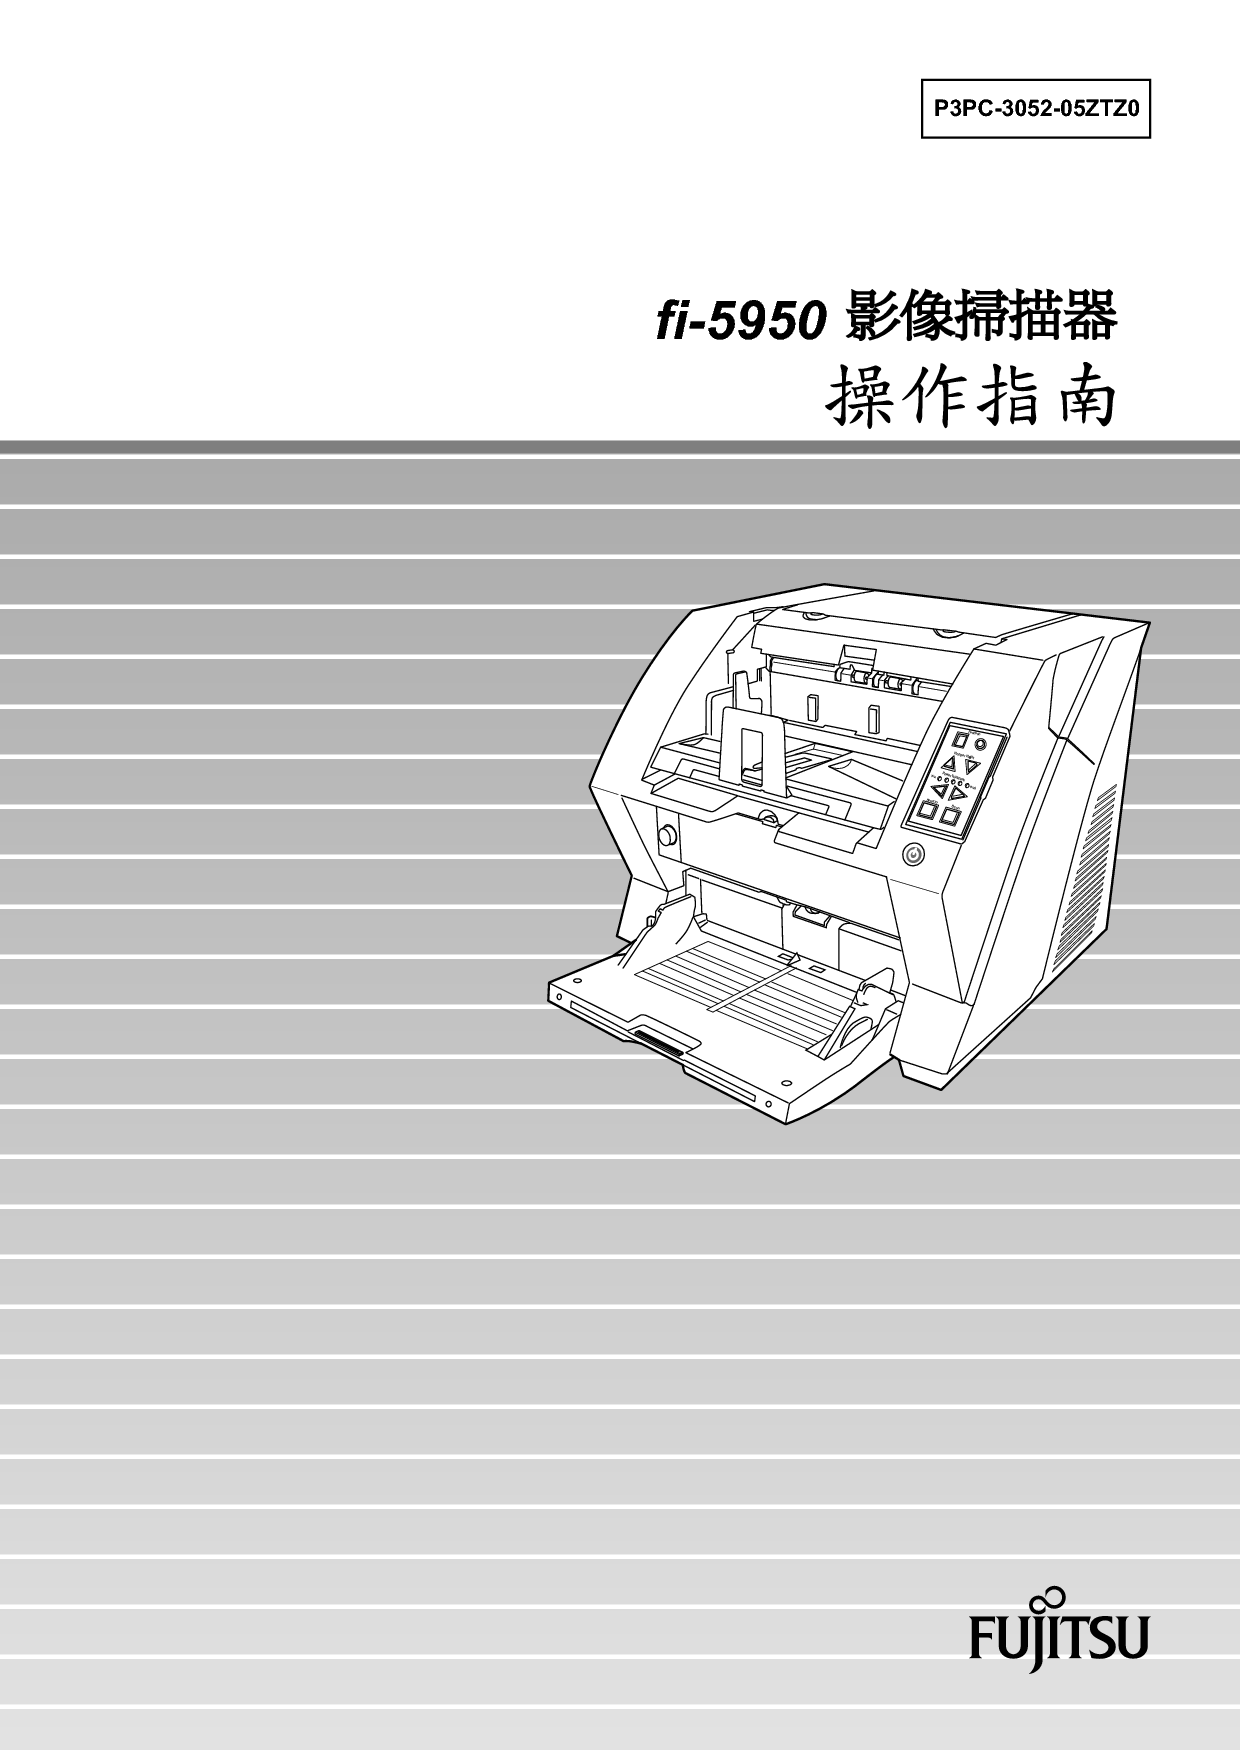 富士通 Fujitsu fi-5950 繁体 使用指南 封面